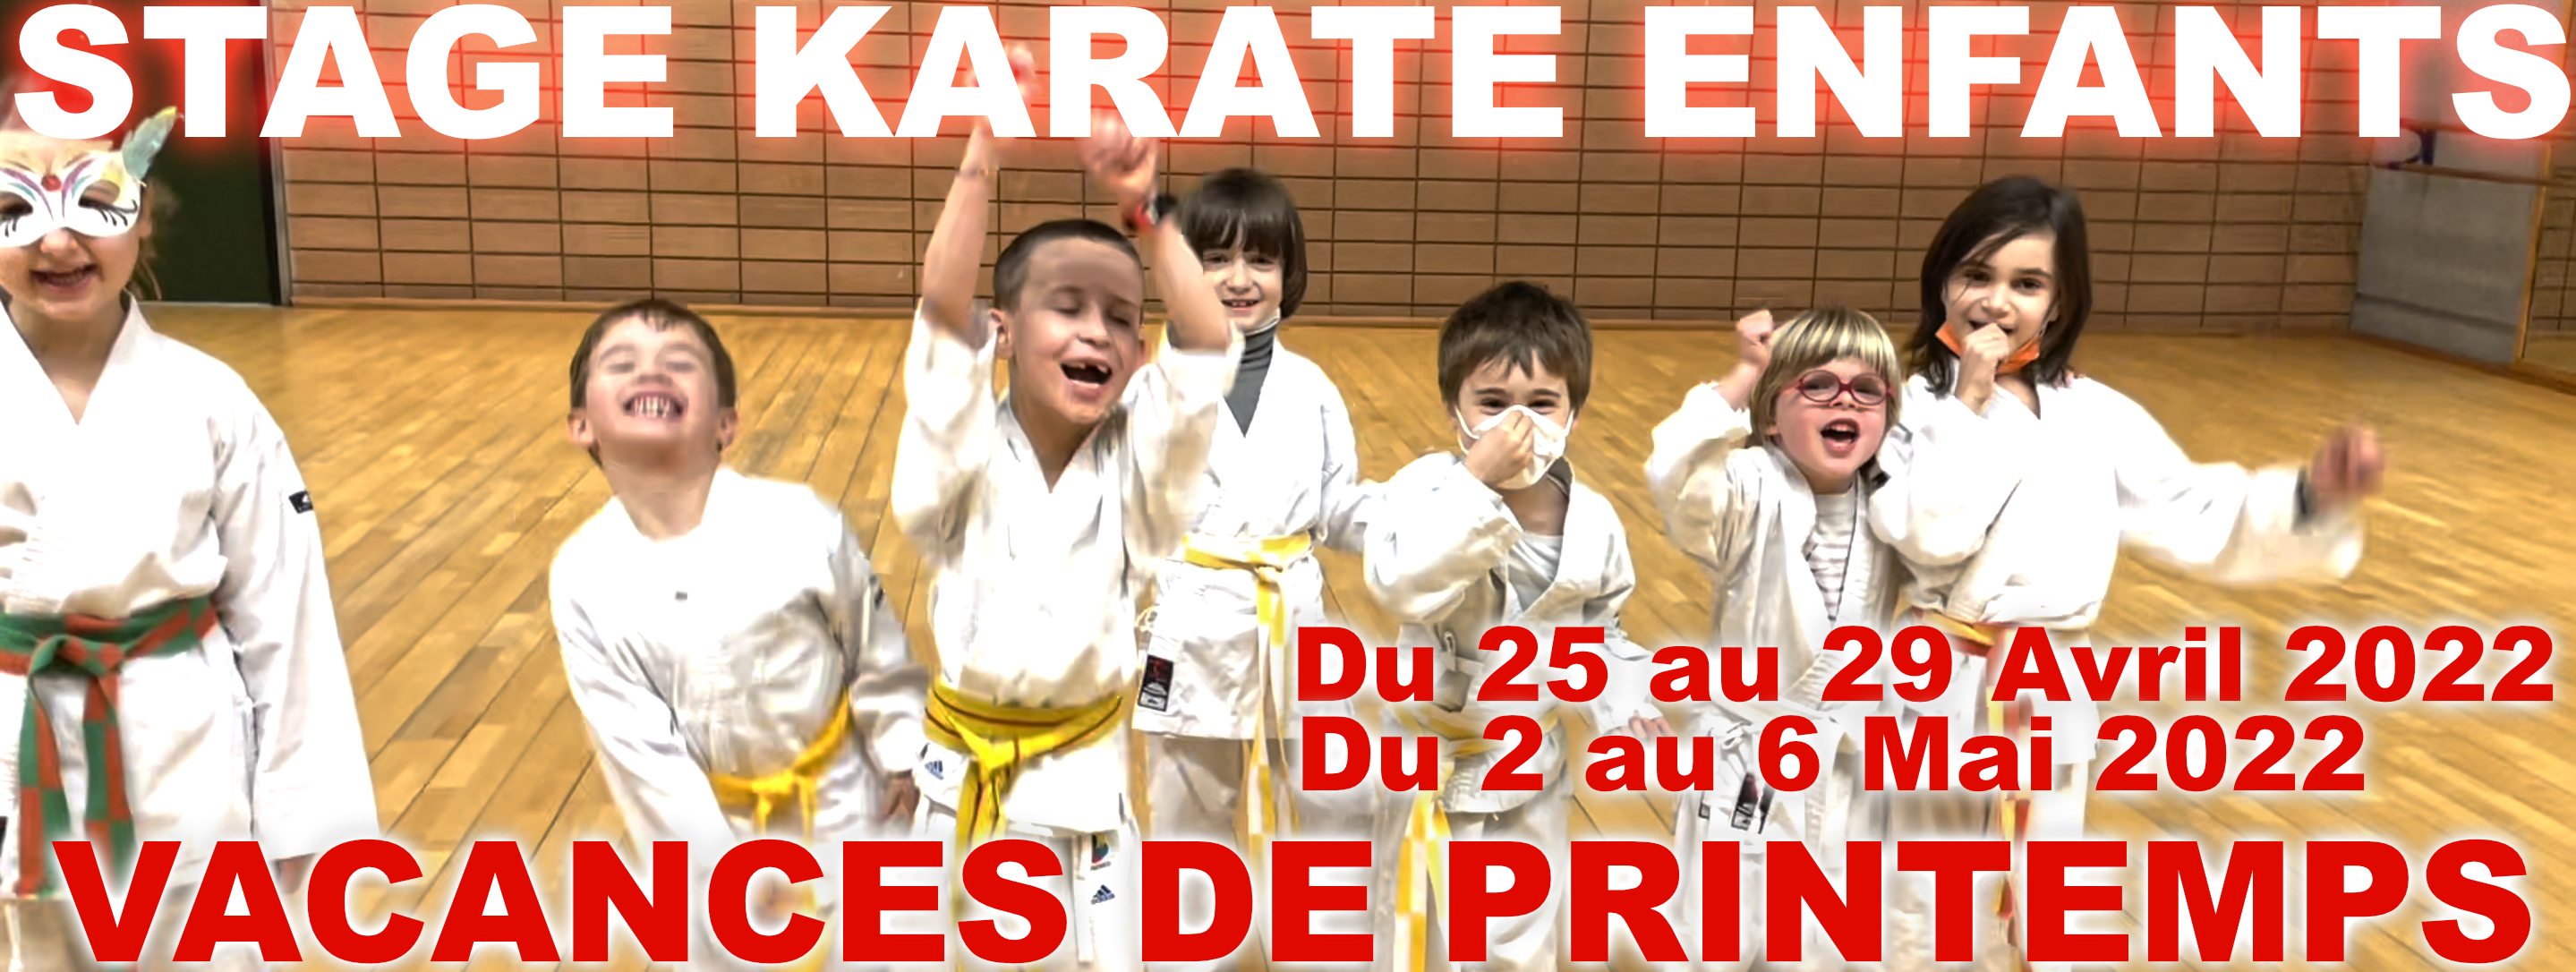 MAK stage karate enfants - Éric Delannoy